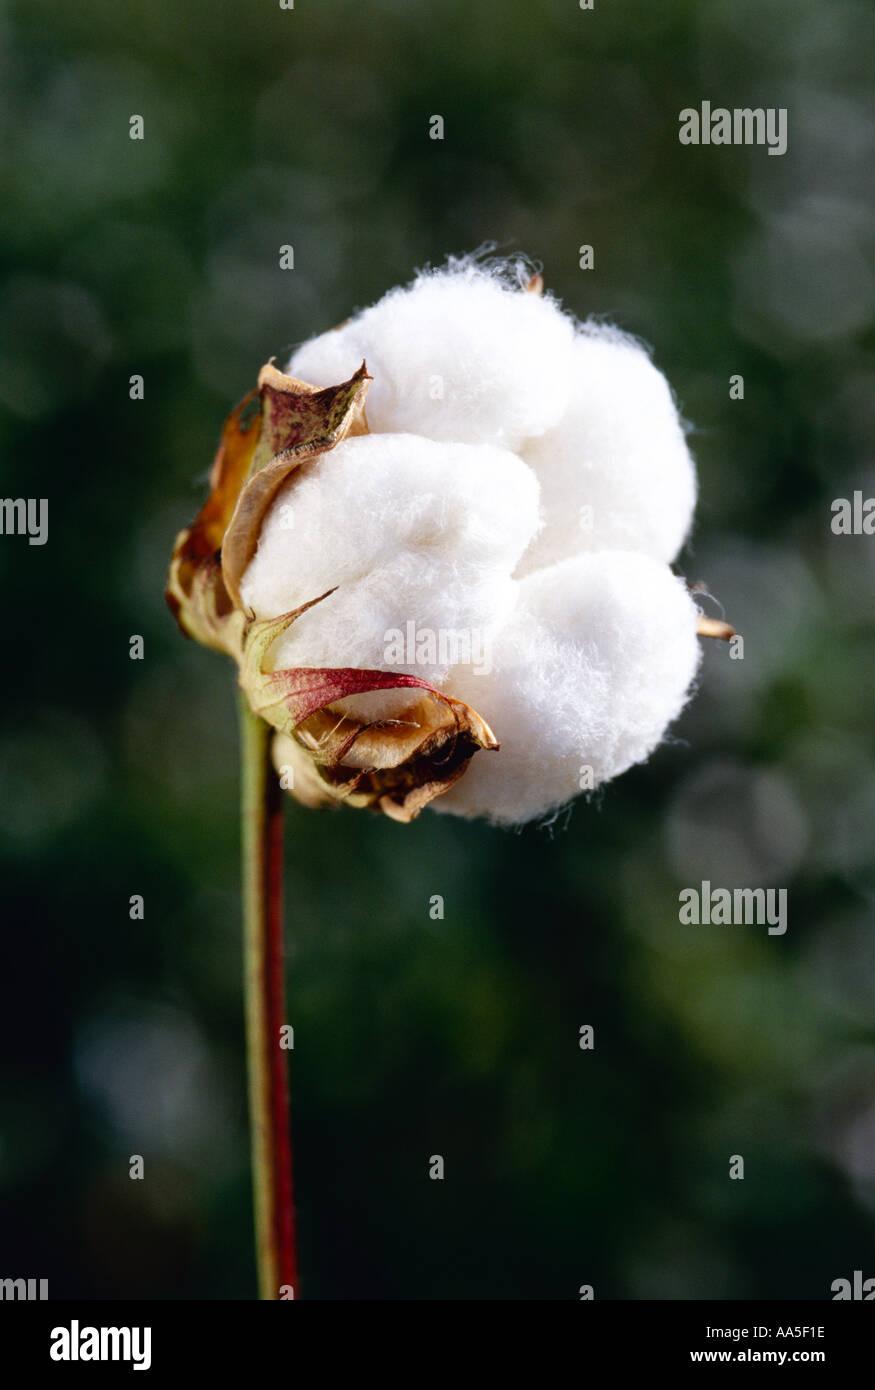 Agriculture - Mature cotton boll dans le processus d'ouverture / Texas, USA. Banque D'Images